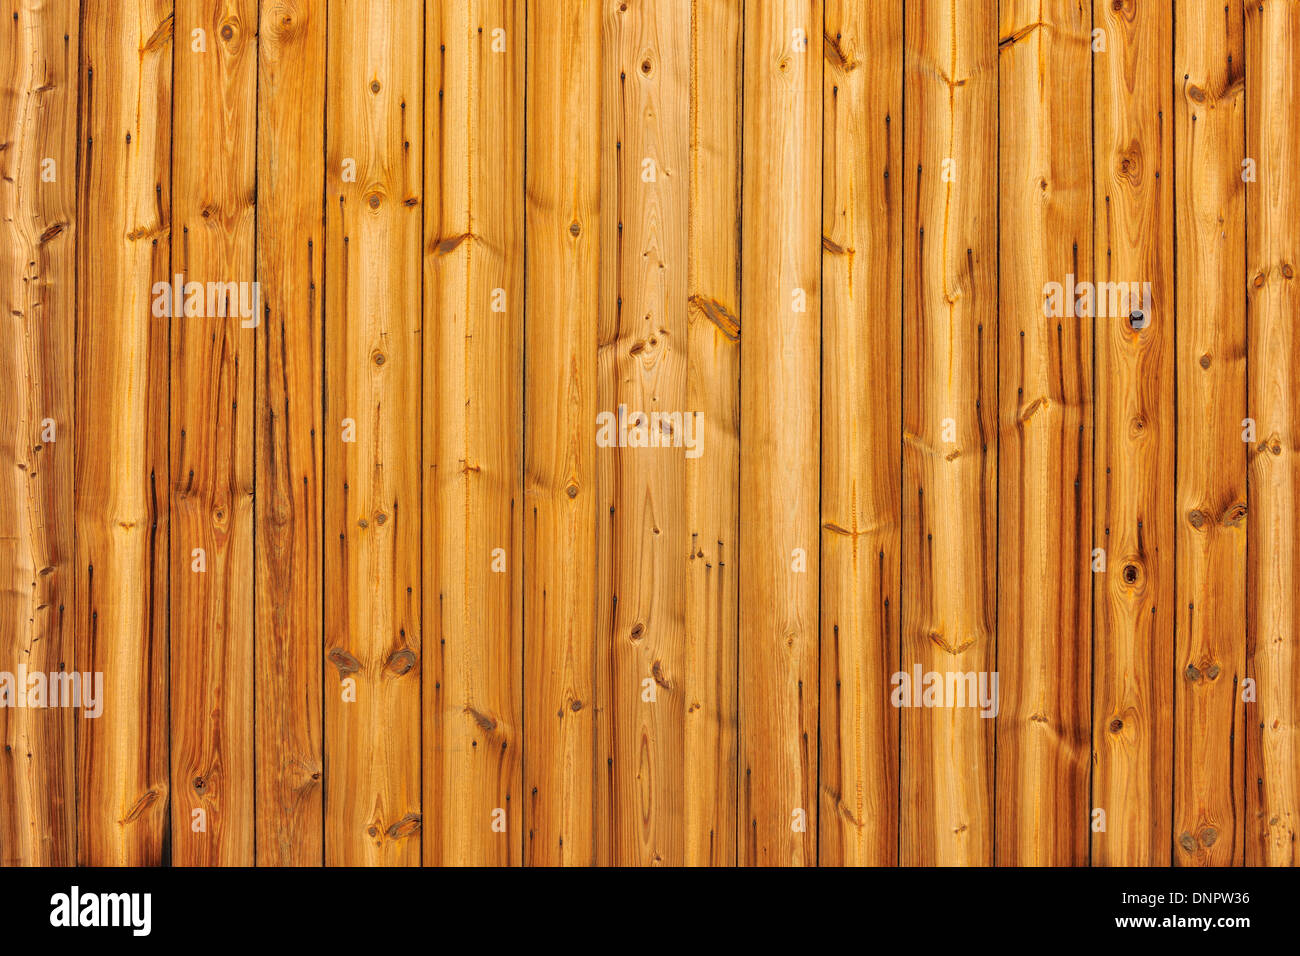 Wooden Wall of Barn, Bavaria, Germany Stock Photo